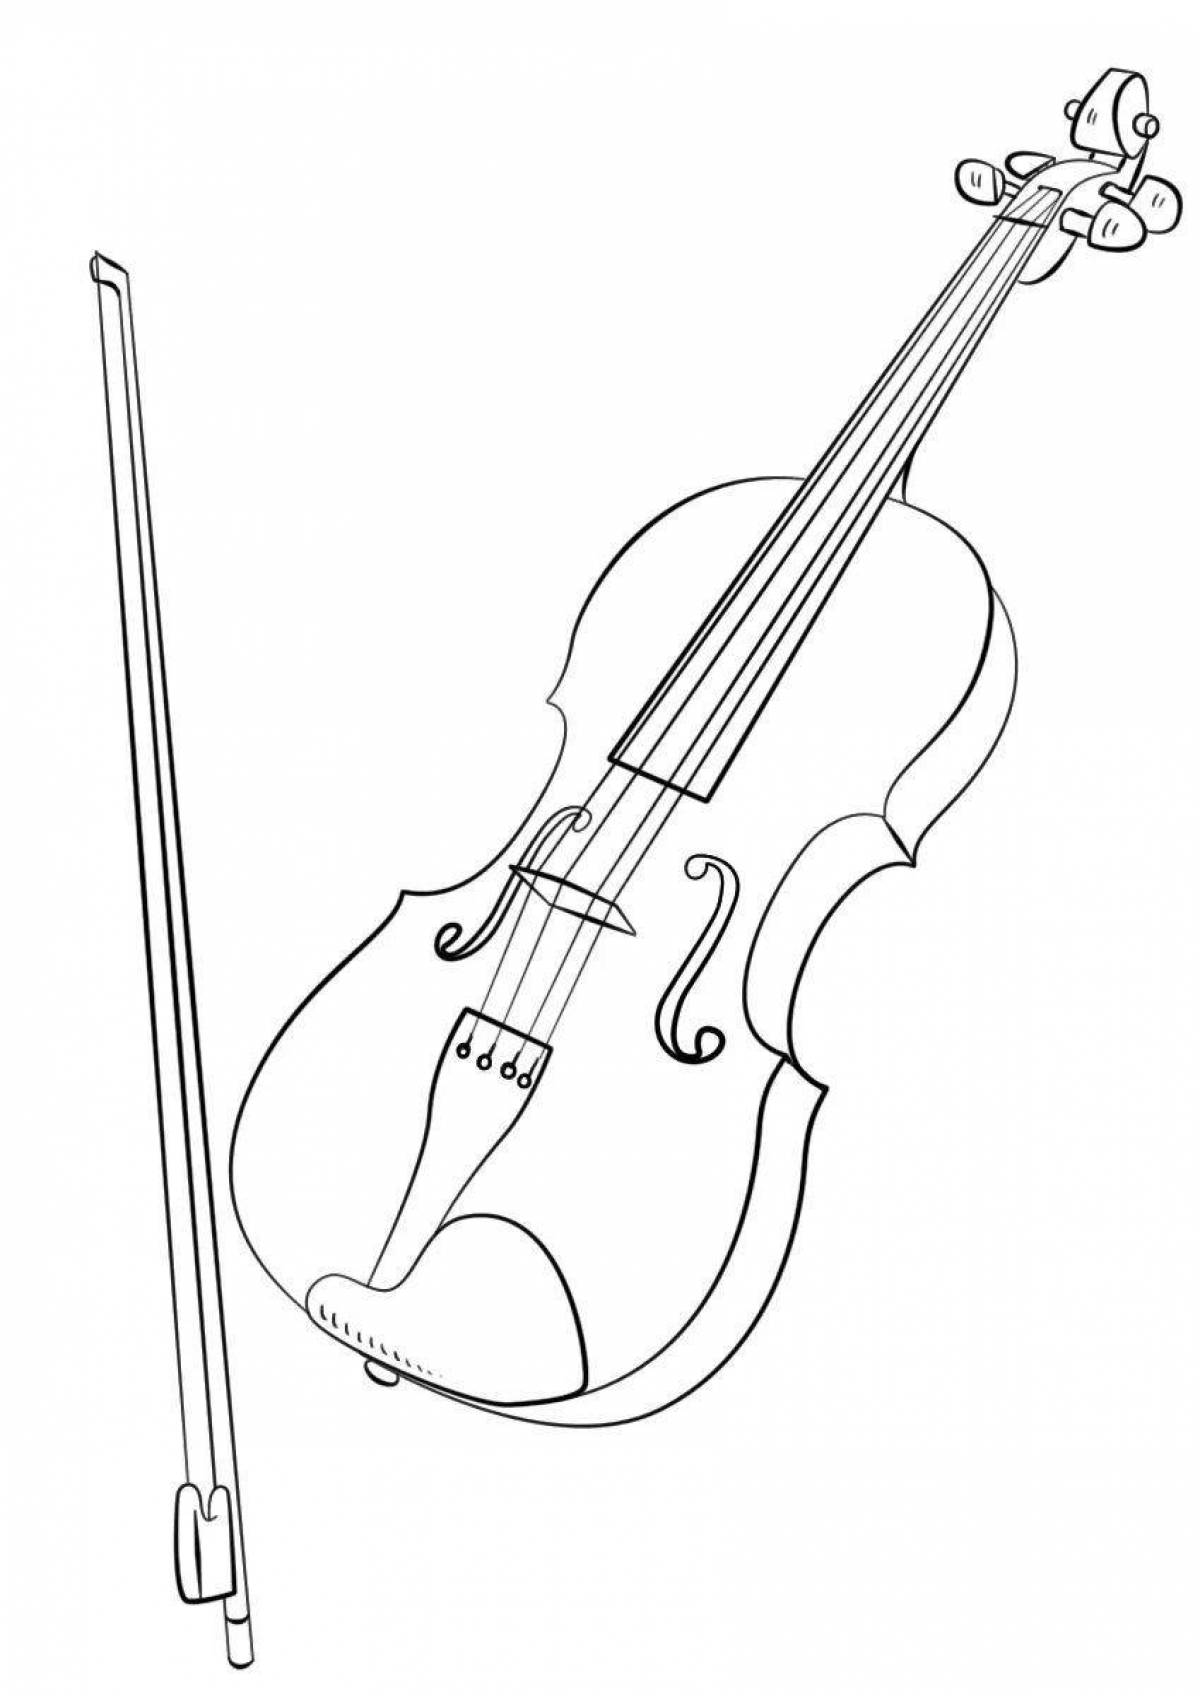 Fun coloring for violin and cello